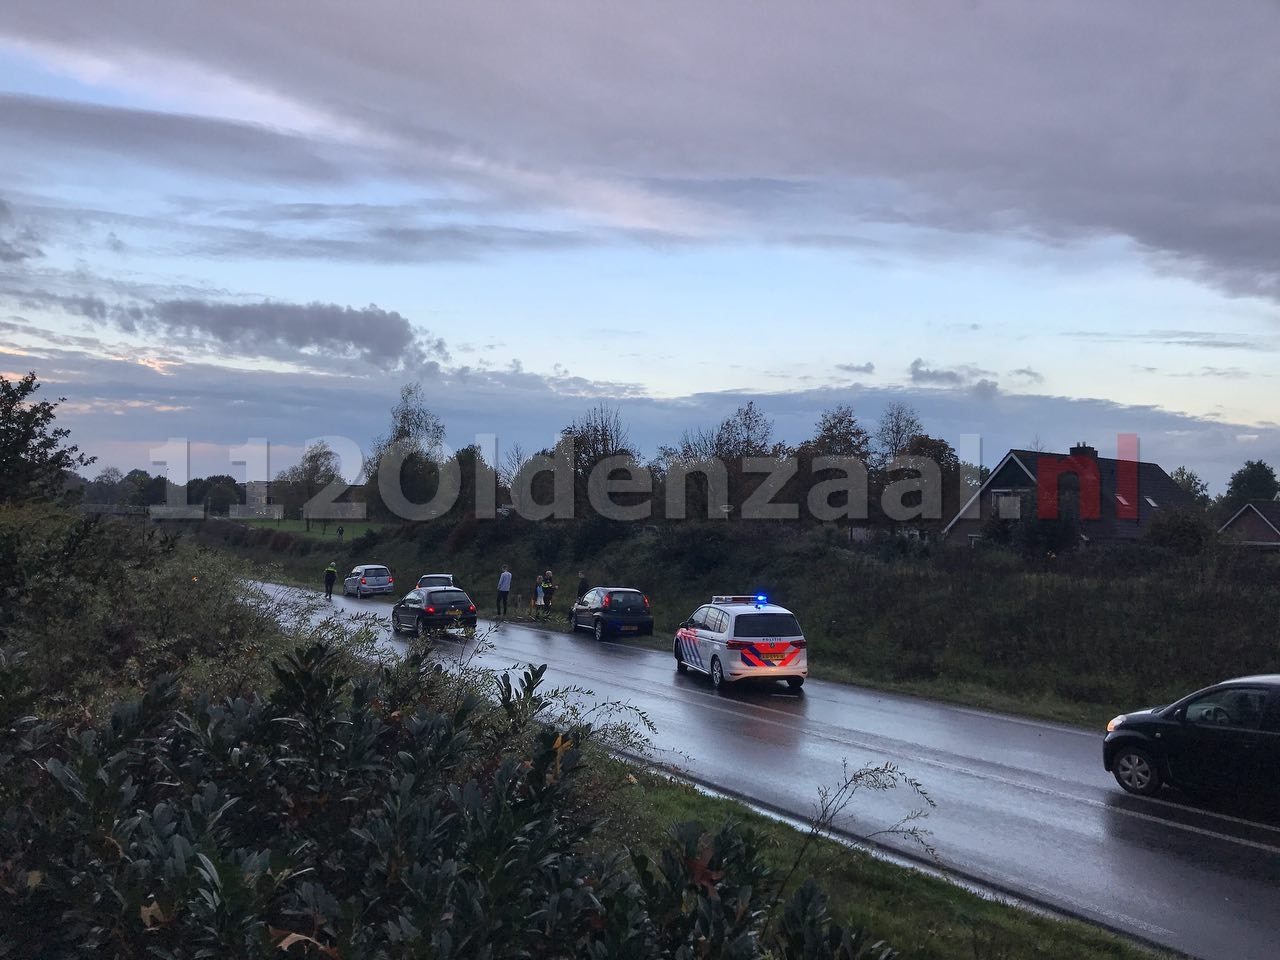 foto 2: Forse file na aanrijding tussen drie voertuigen op de provinciale rondweg in Oldenzaal